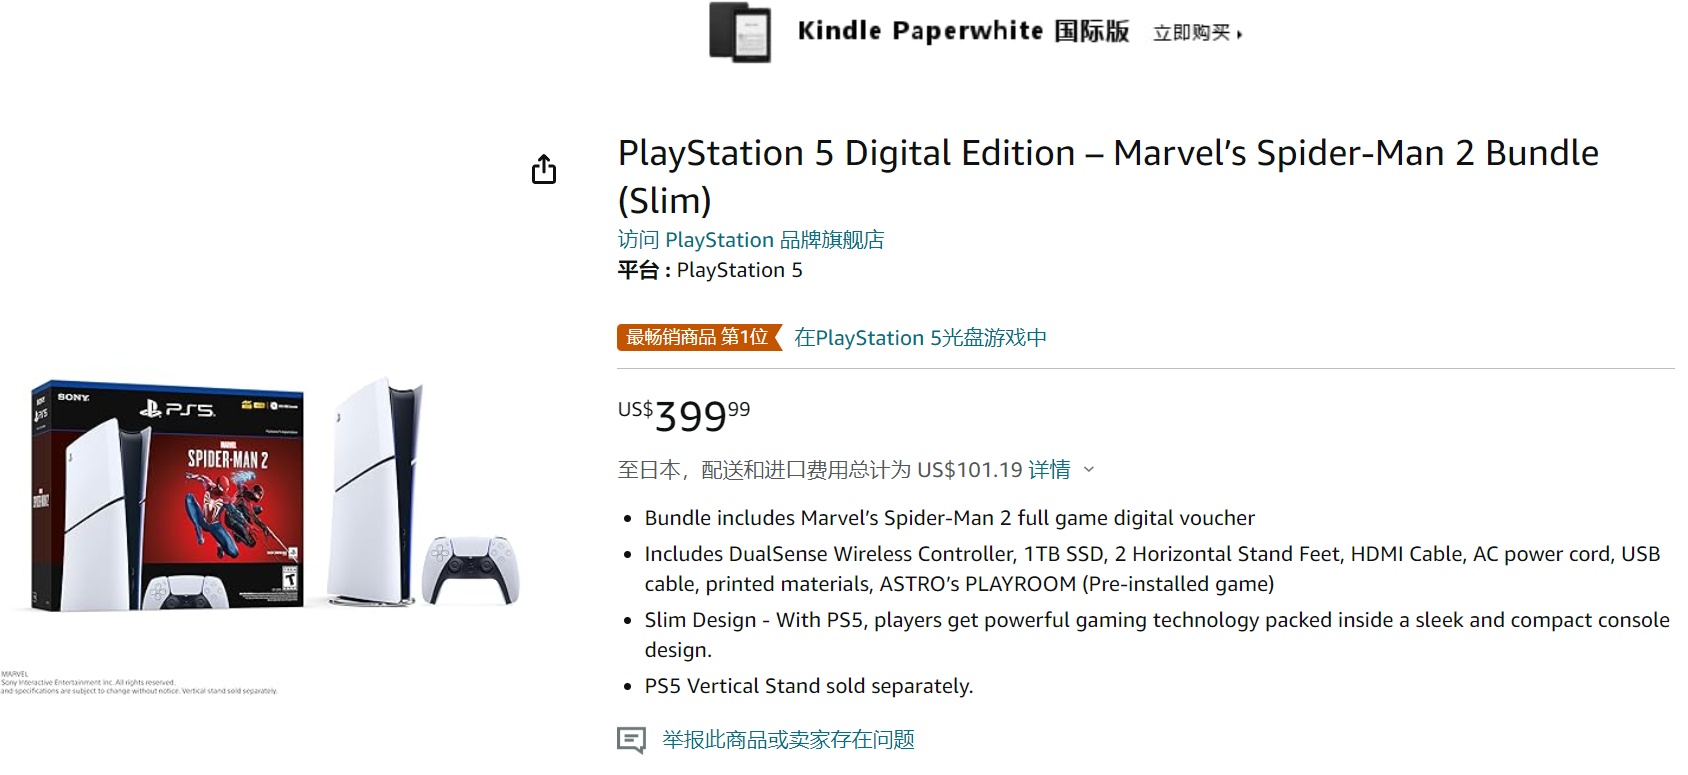 《漫威蜘蛛俠2》PS5綑綁包上架亞馬遜 售價399美元